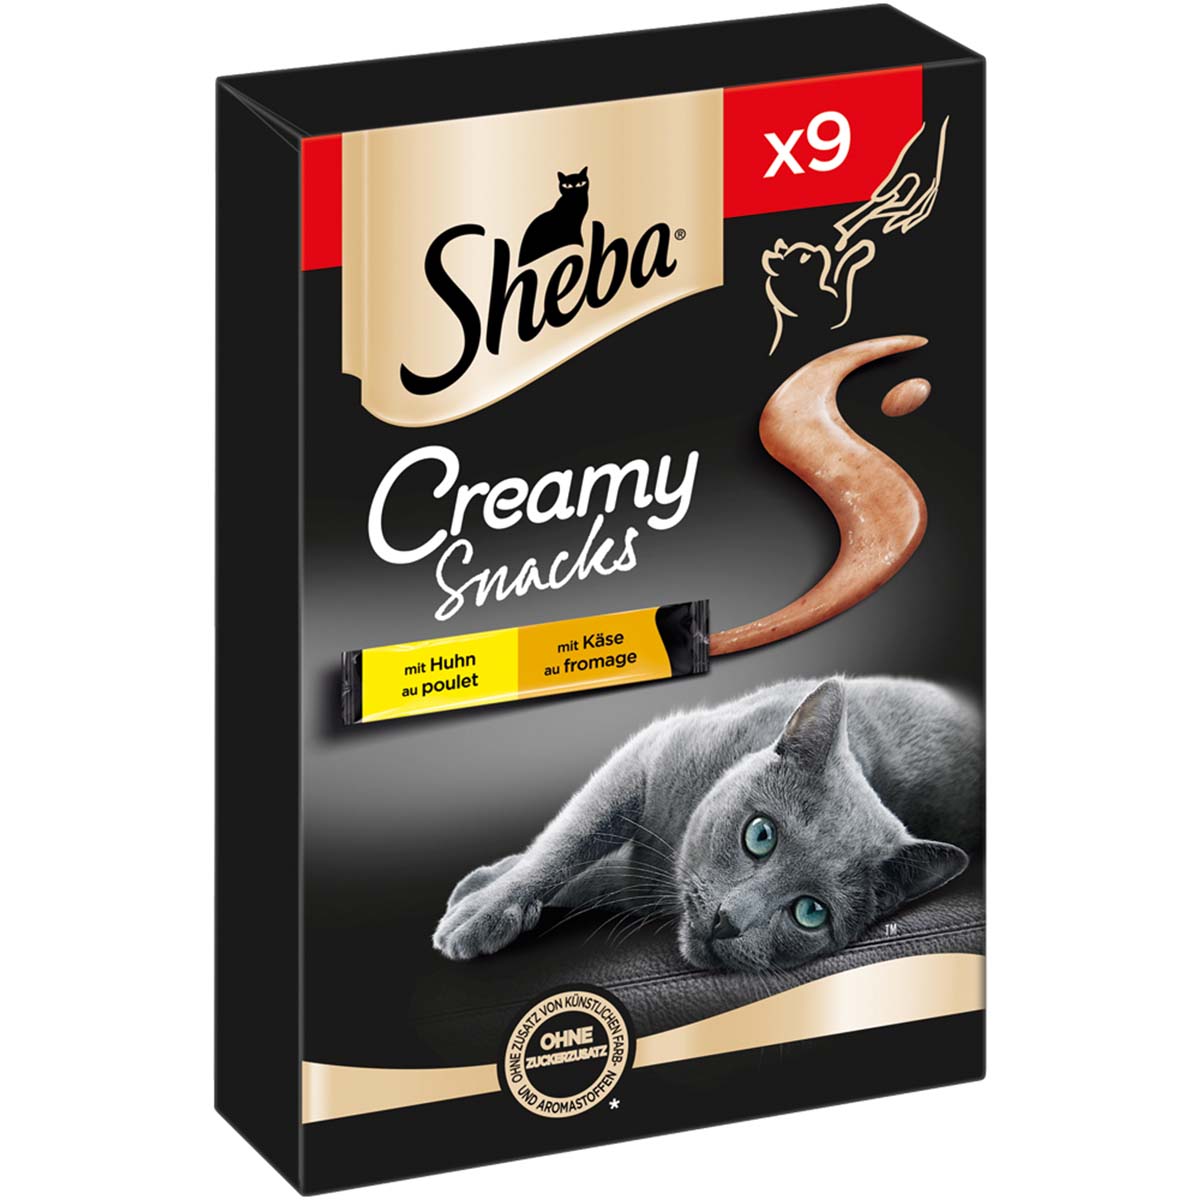 SHEBA® Creamy Snacks mit Huhn und Käse 18x12g von Sheba